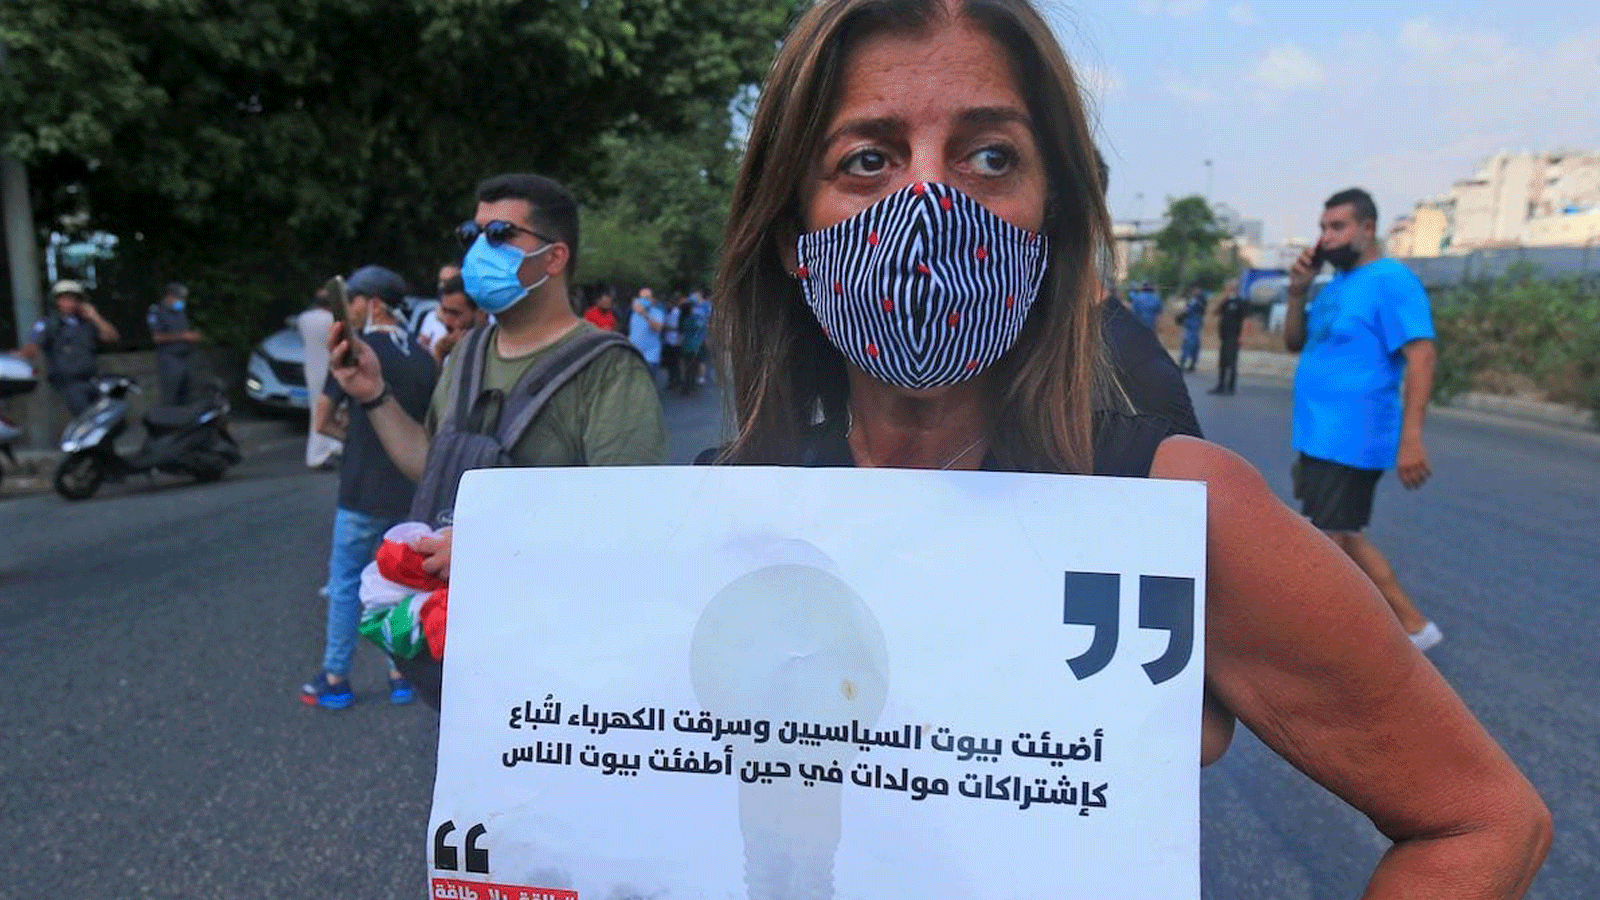 متظاهرة لبنانية تحمل لافتة خلال مظاهرة خارج وزارة الطاقة في بيروت في 4 آب / أغسطس 2020 ضد الانقطاعات المتكررة للتيار الكهربائي.